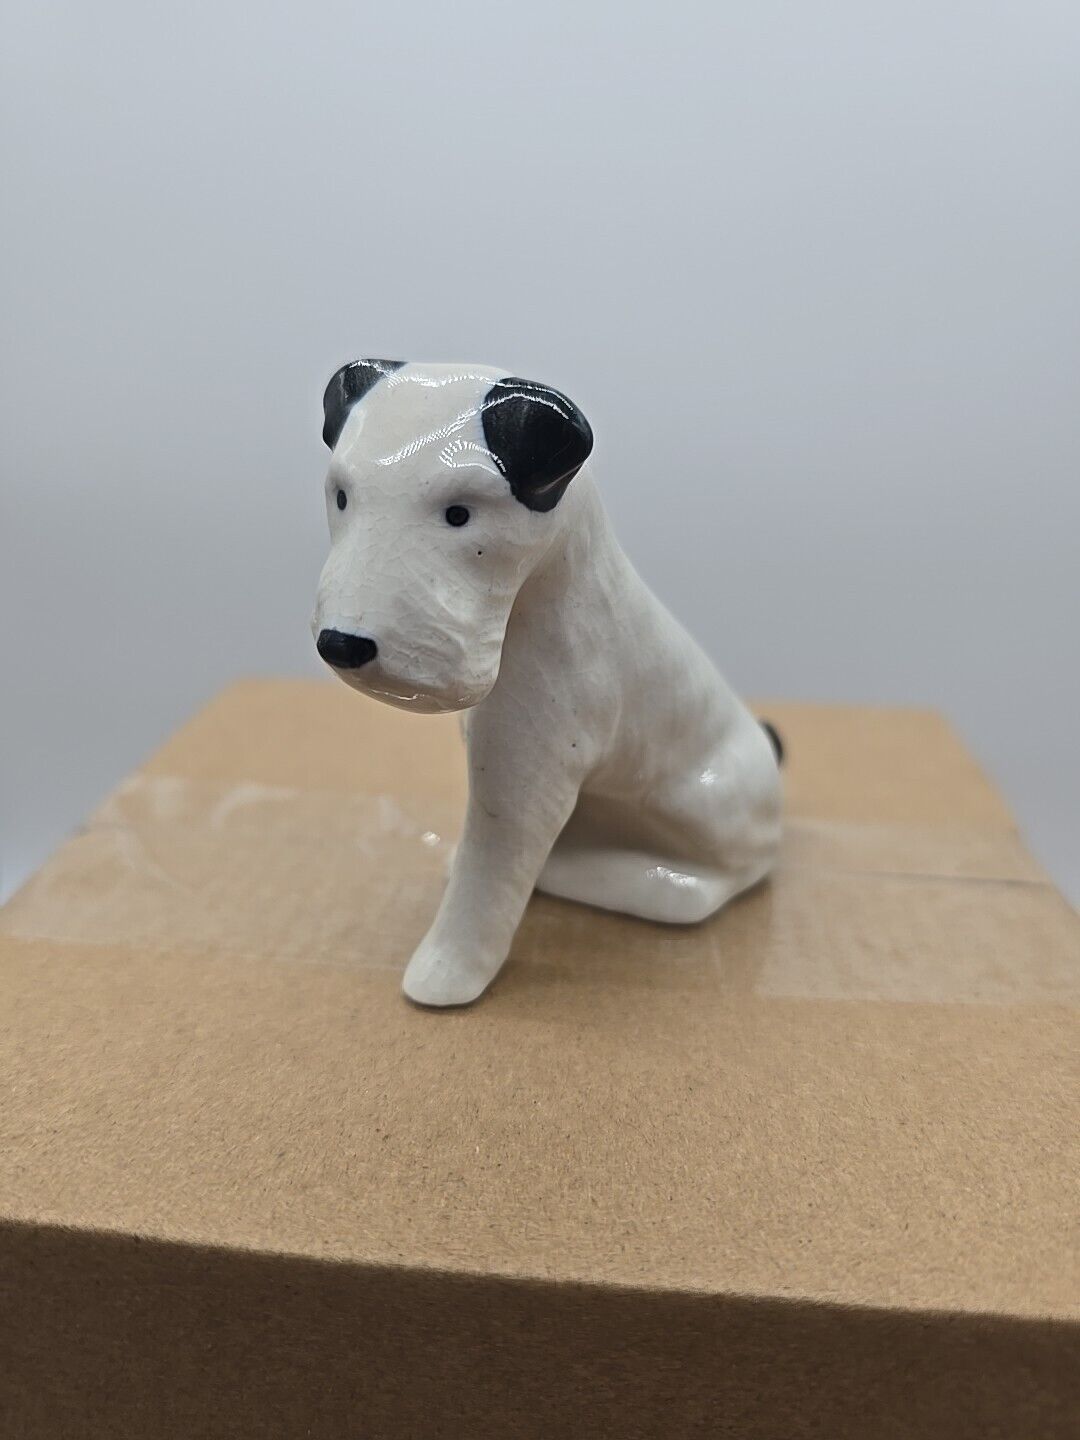 Vintage Porcelain Terrier Dog Statue Figurine, White w/Black, Japan?